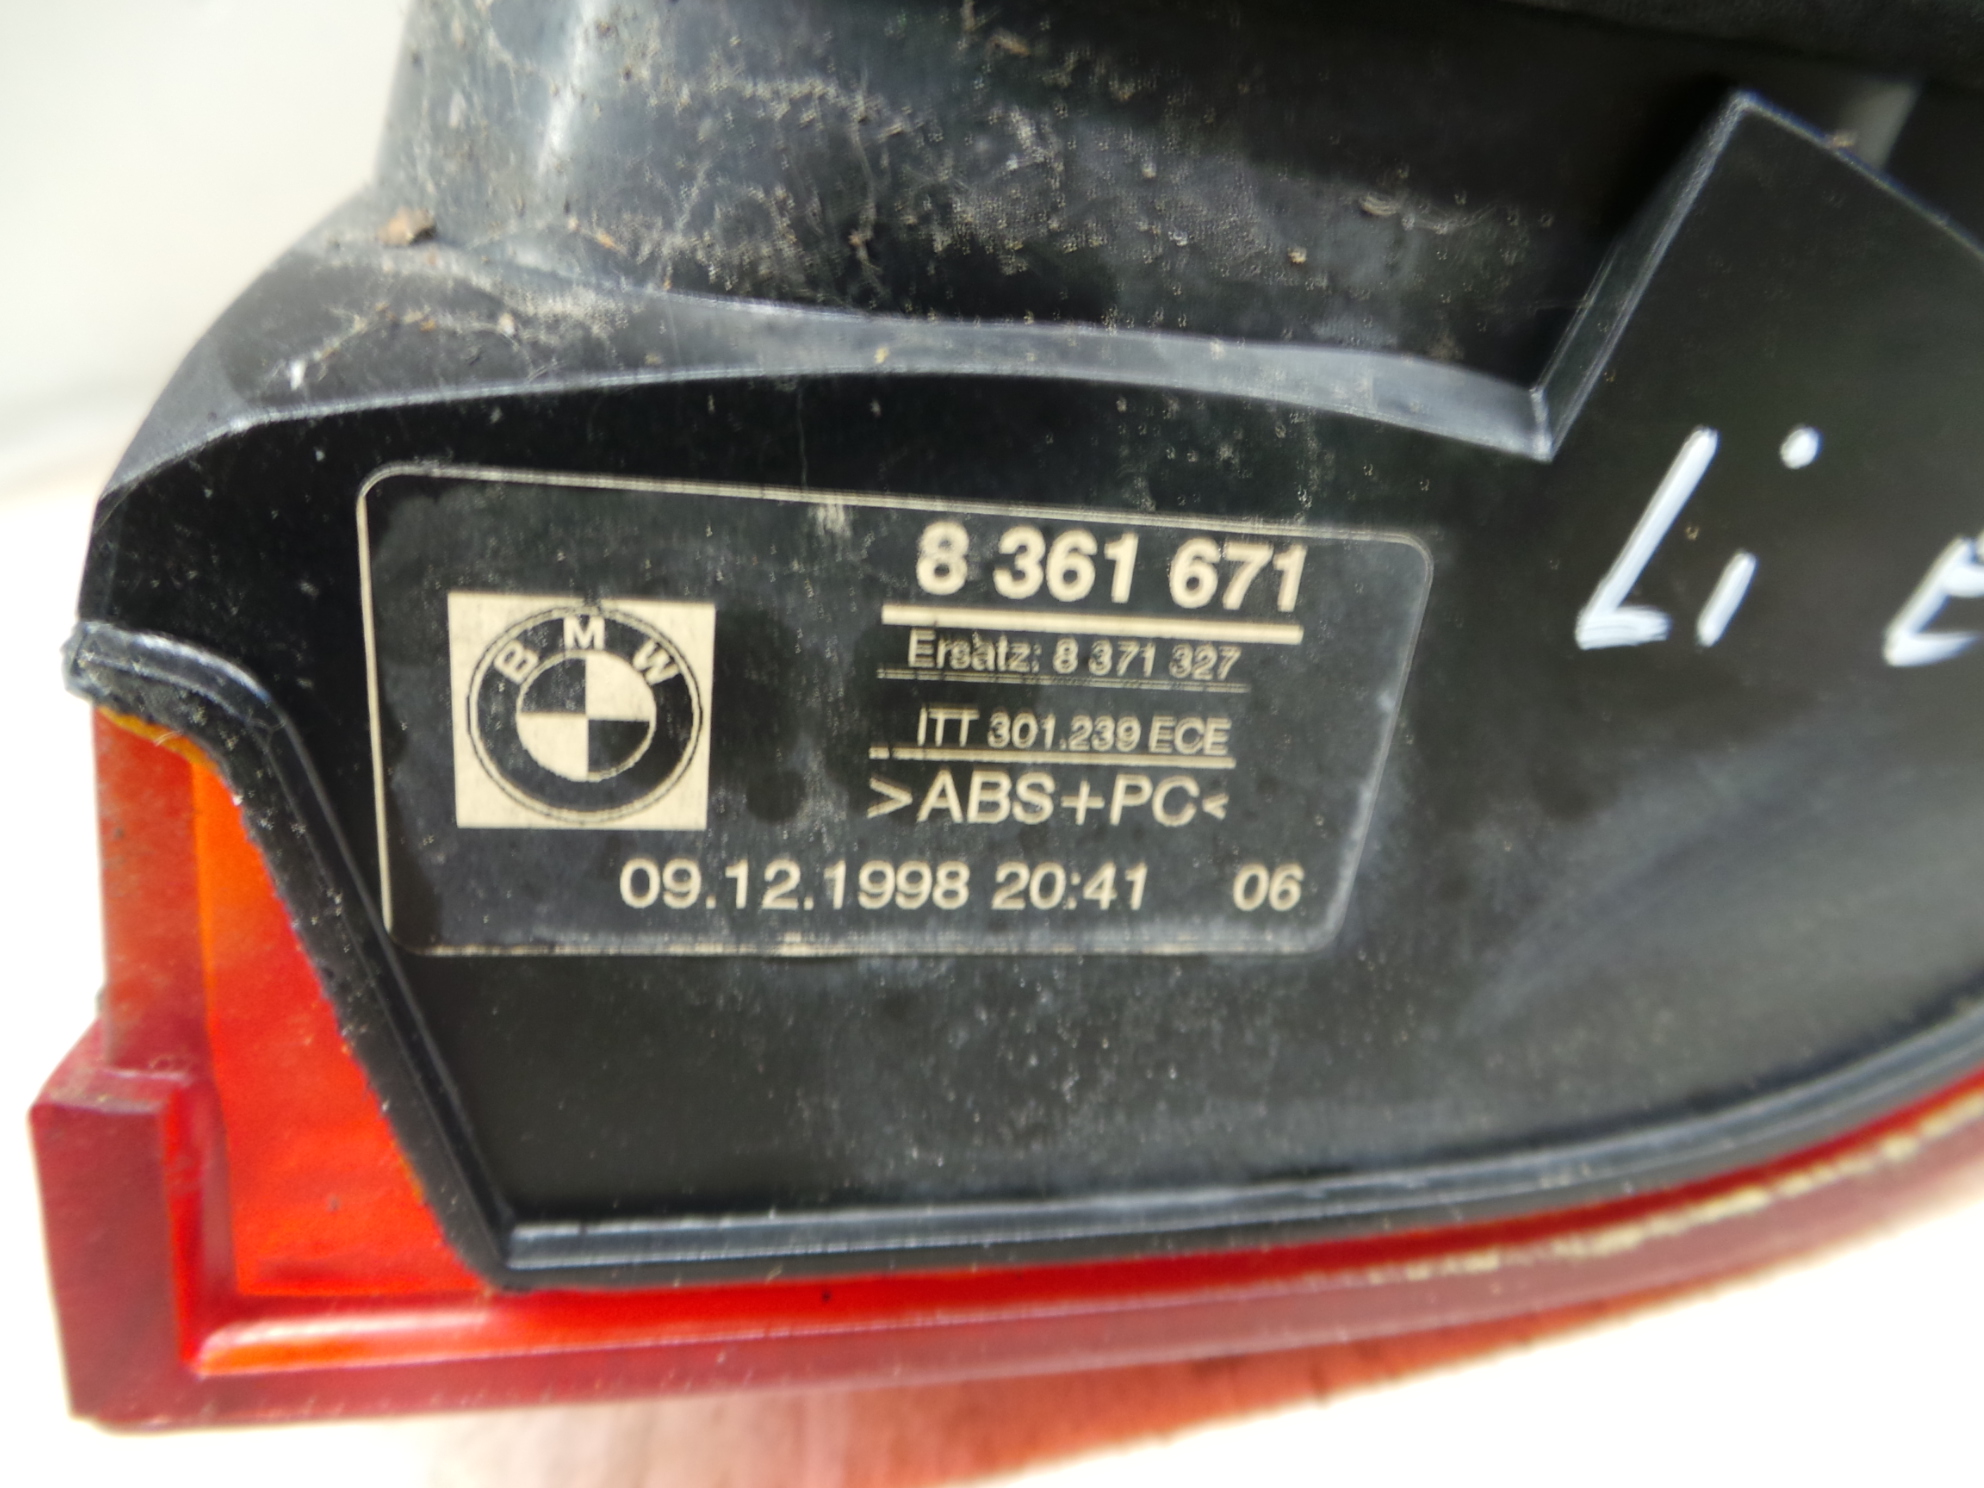 BMW 5er E39 Kombi Bj.95-00 Rücklicht außen links Heckleuchte Schlußleuchte 8361671